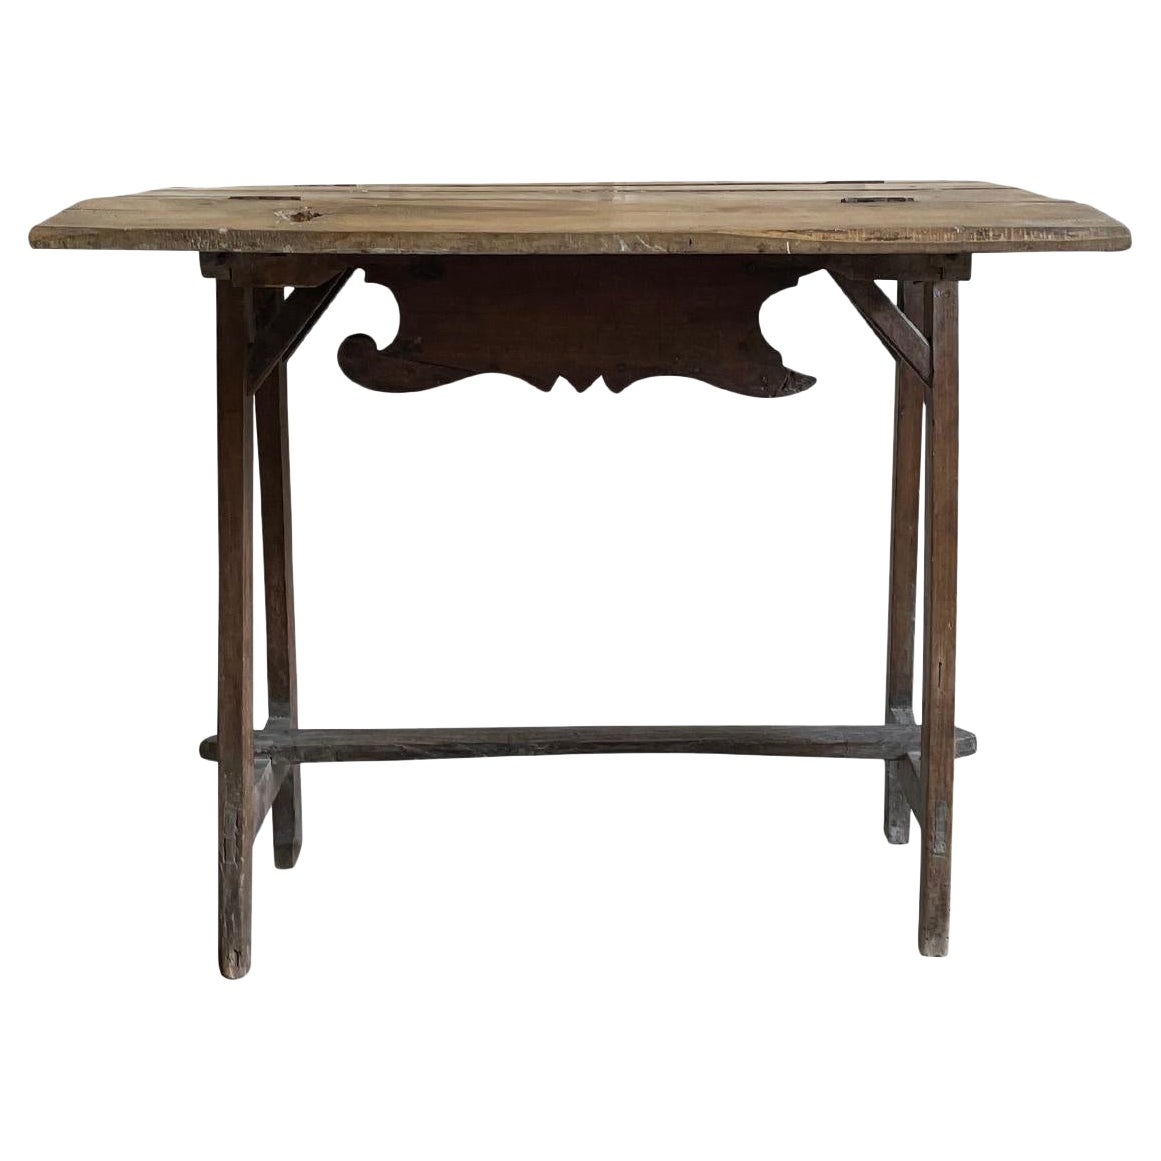 Petite table d'appoint en noyer pliable italienne du 18e siècle - Table toscane ancienne